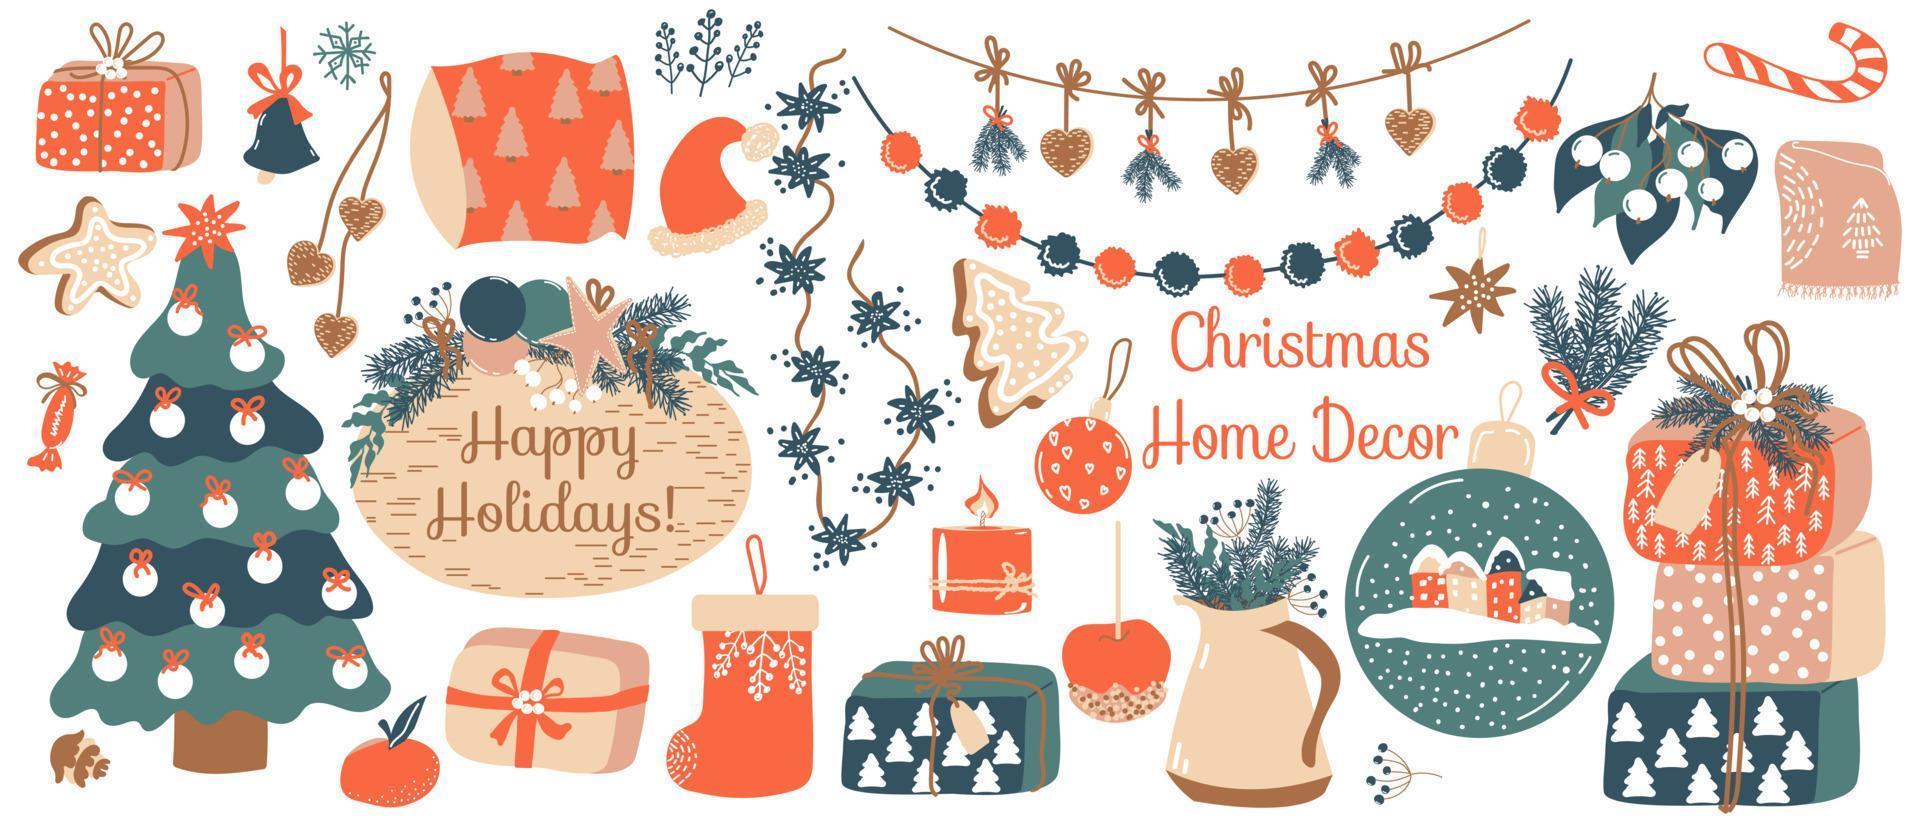 Weihnachts-Wohnkultur-Set. vektorelemente von handgezeichneten elementen aus fichte, geschenkboxen, girlanden, lebkuchen, süßigkeiten, textilien, weihnachtsspielzeug. trendige Objekte für die gemütliche Winterzeit vektor